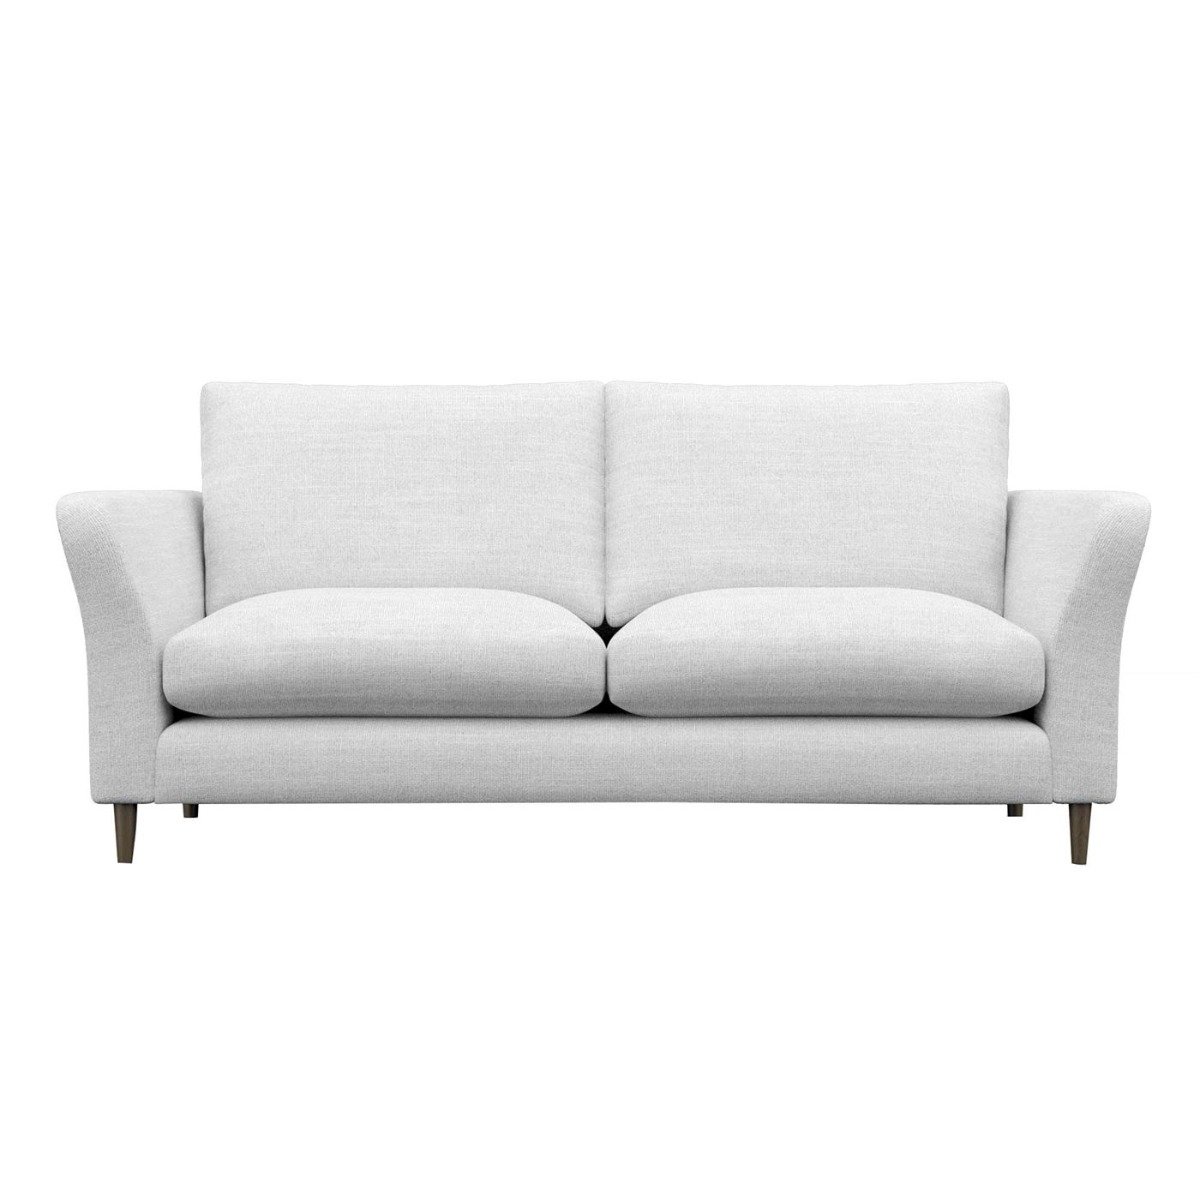 Rowena Large Sofa, White Fabric | Barker & Stonehouse